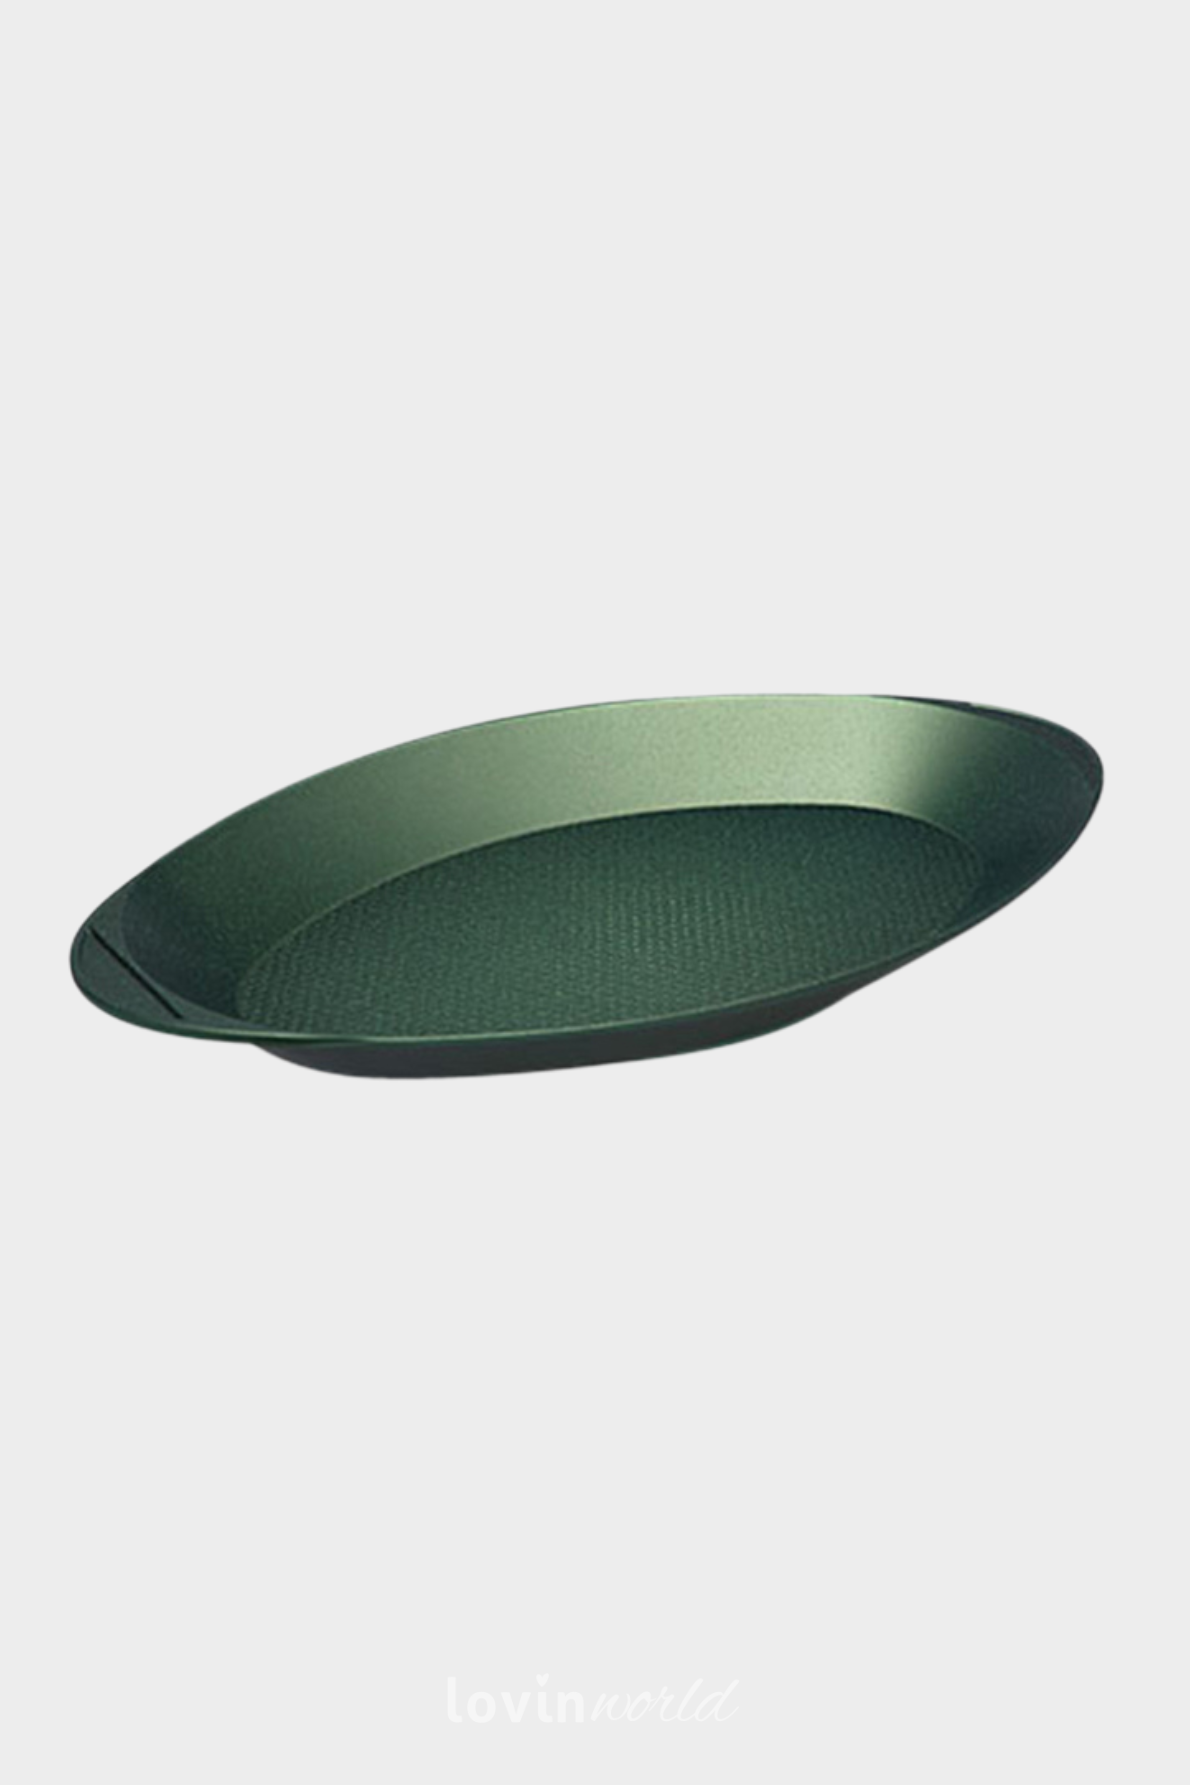 Pesciera ovale Dr. Green in alluminio antiaderente 46x26 cm.-1